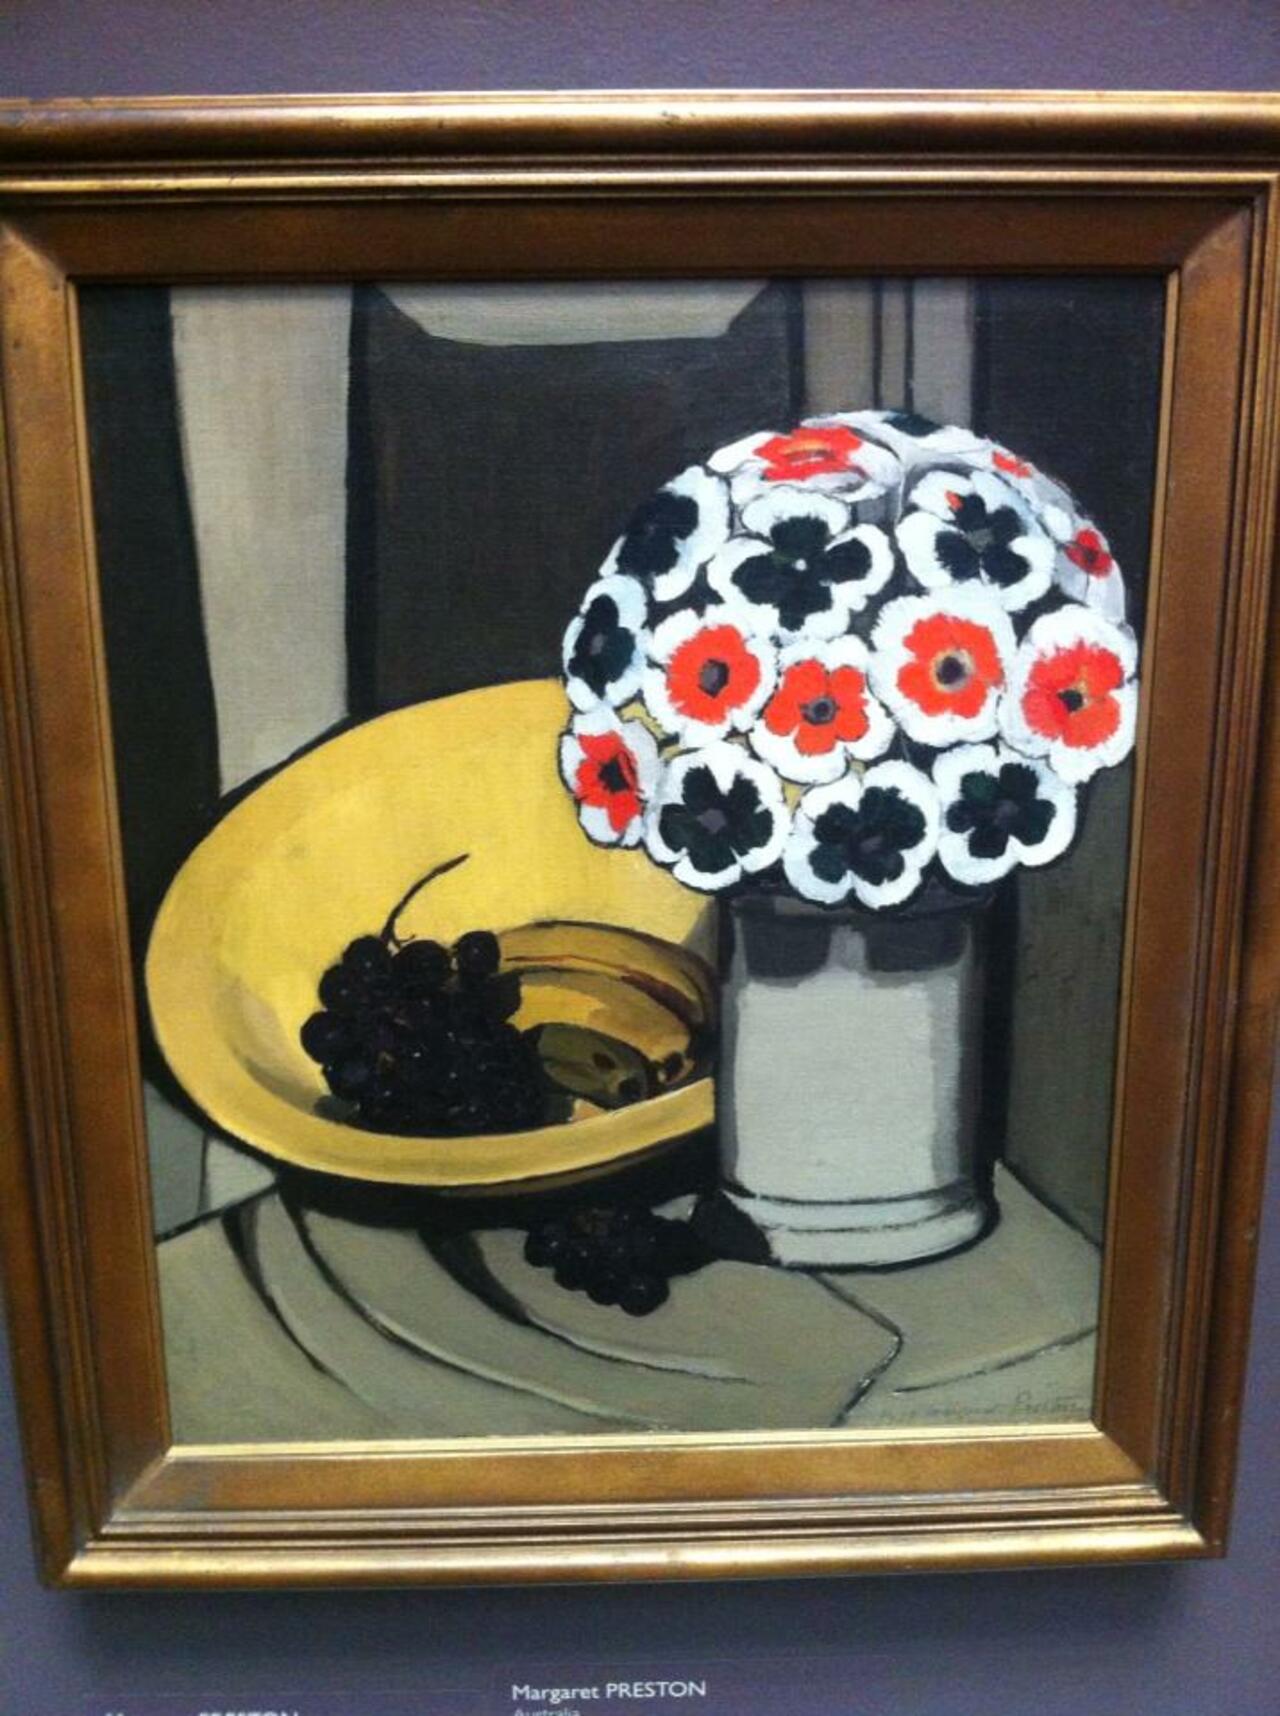 Margarette Preston's colours are exquisite !! #Art #gallery #photo #painting http://t.co/JR7FV5wh2l